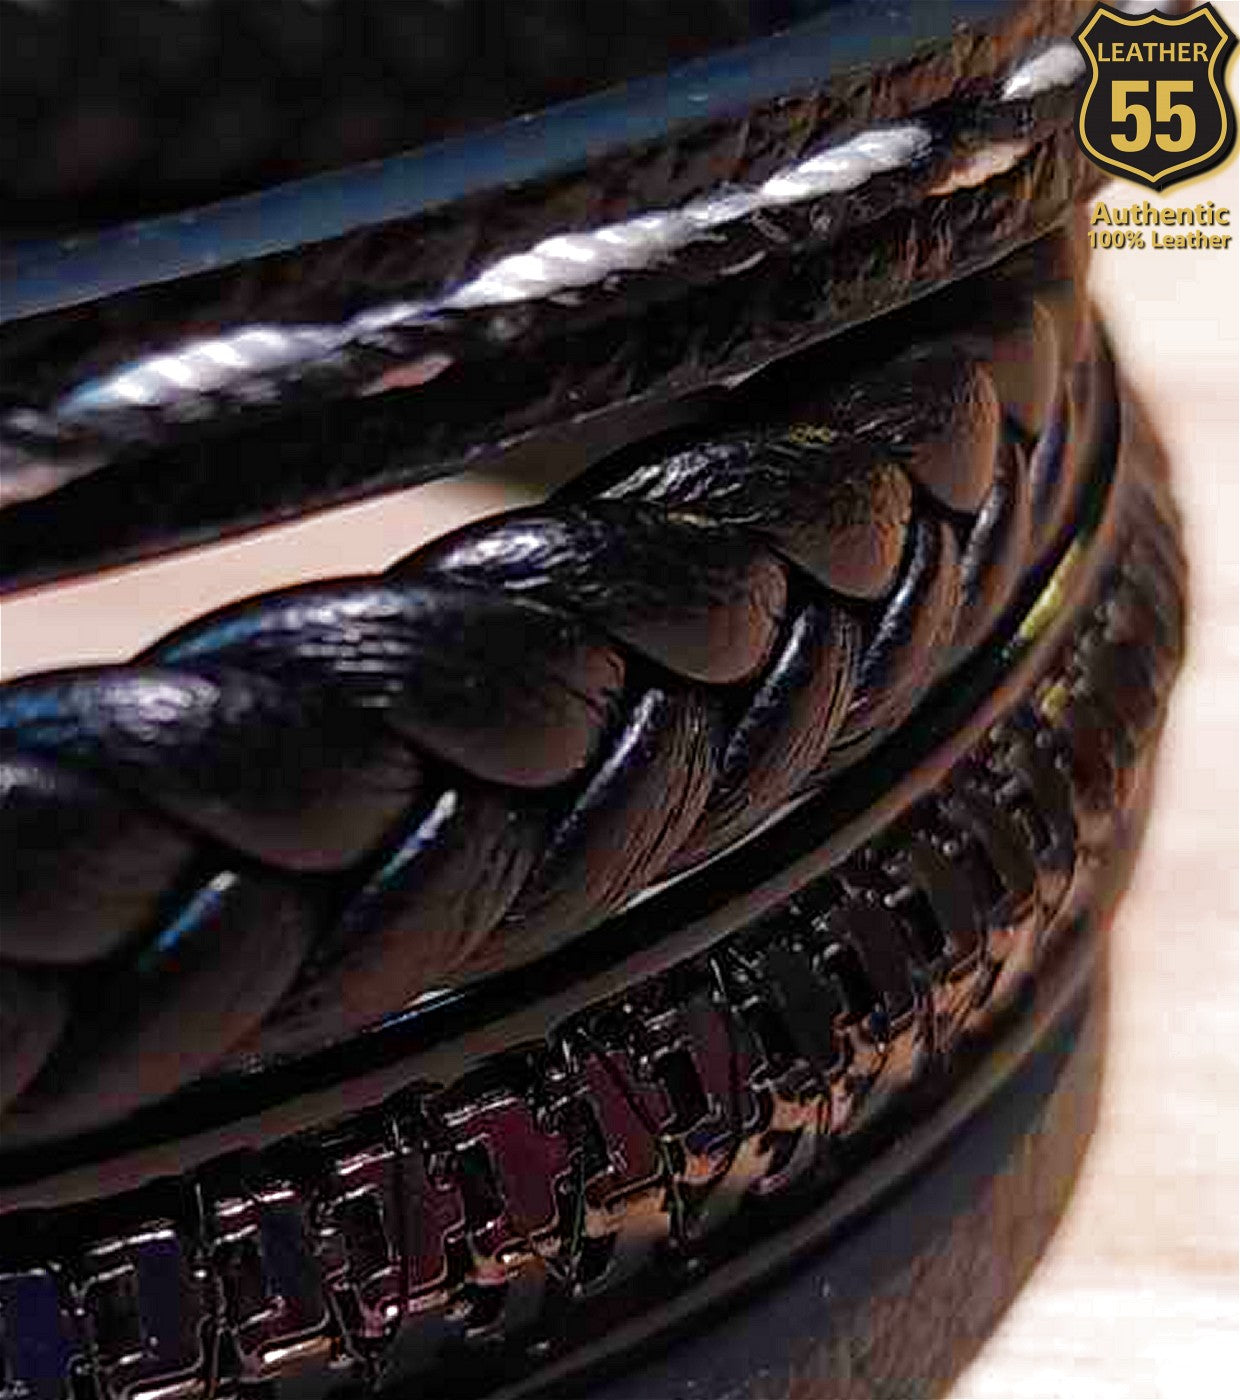 Leather 55 Ανδρικό Xειροποίητο Δερμάτινο βραχιόλι με ανοξείδωτο ατσάλι σε συσκευασία δώρου / Κωδικός Προϊόντος: C151